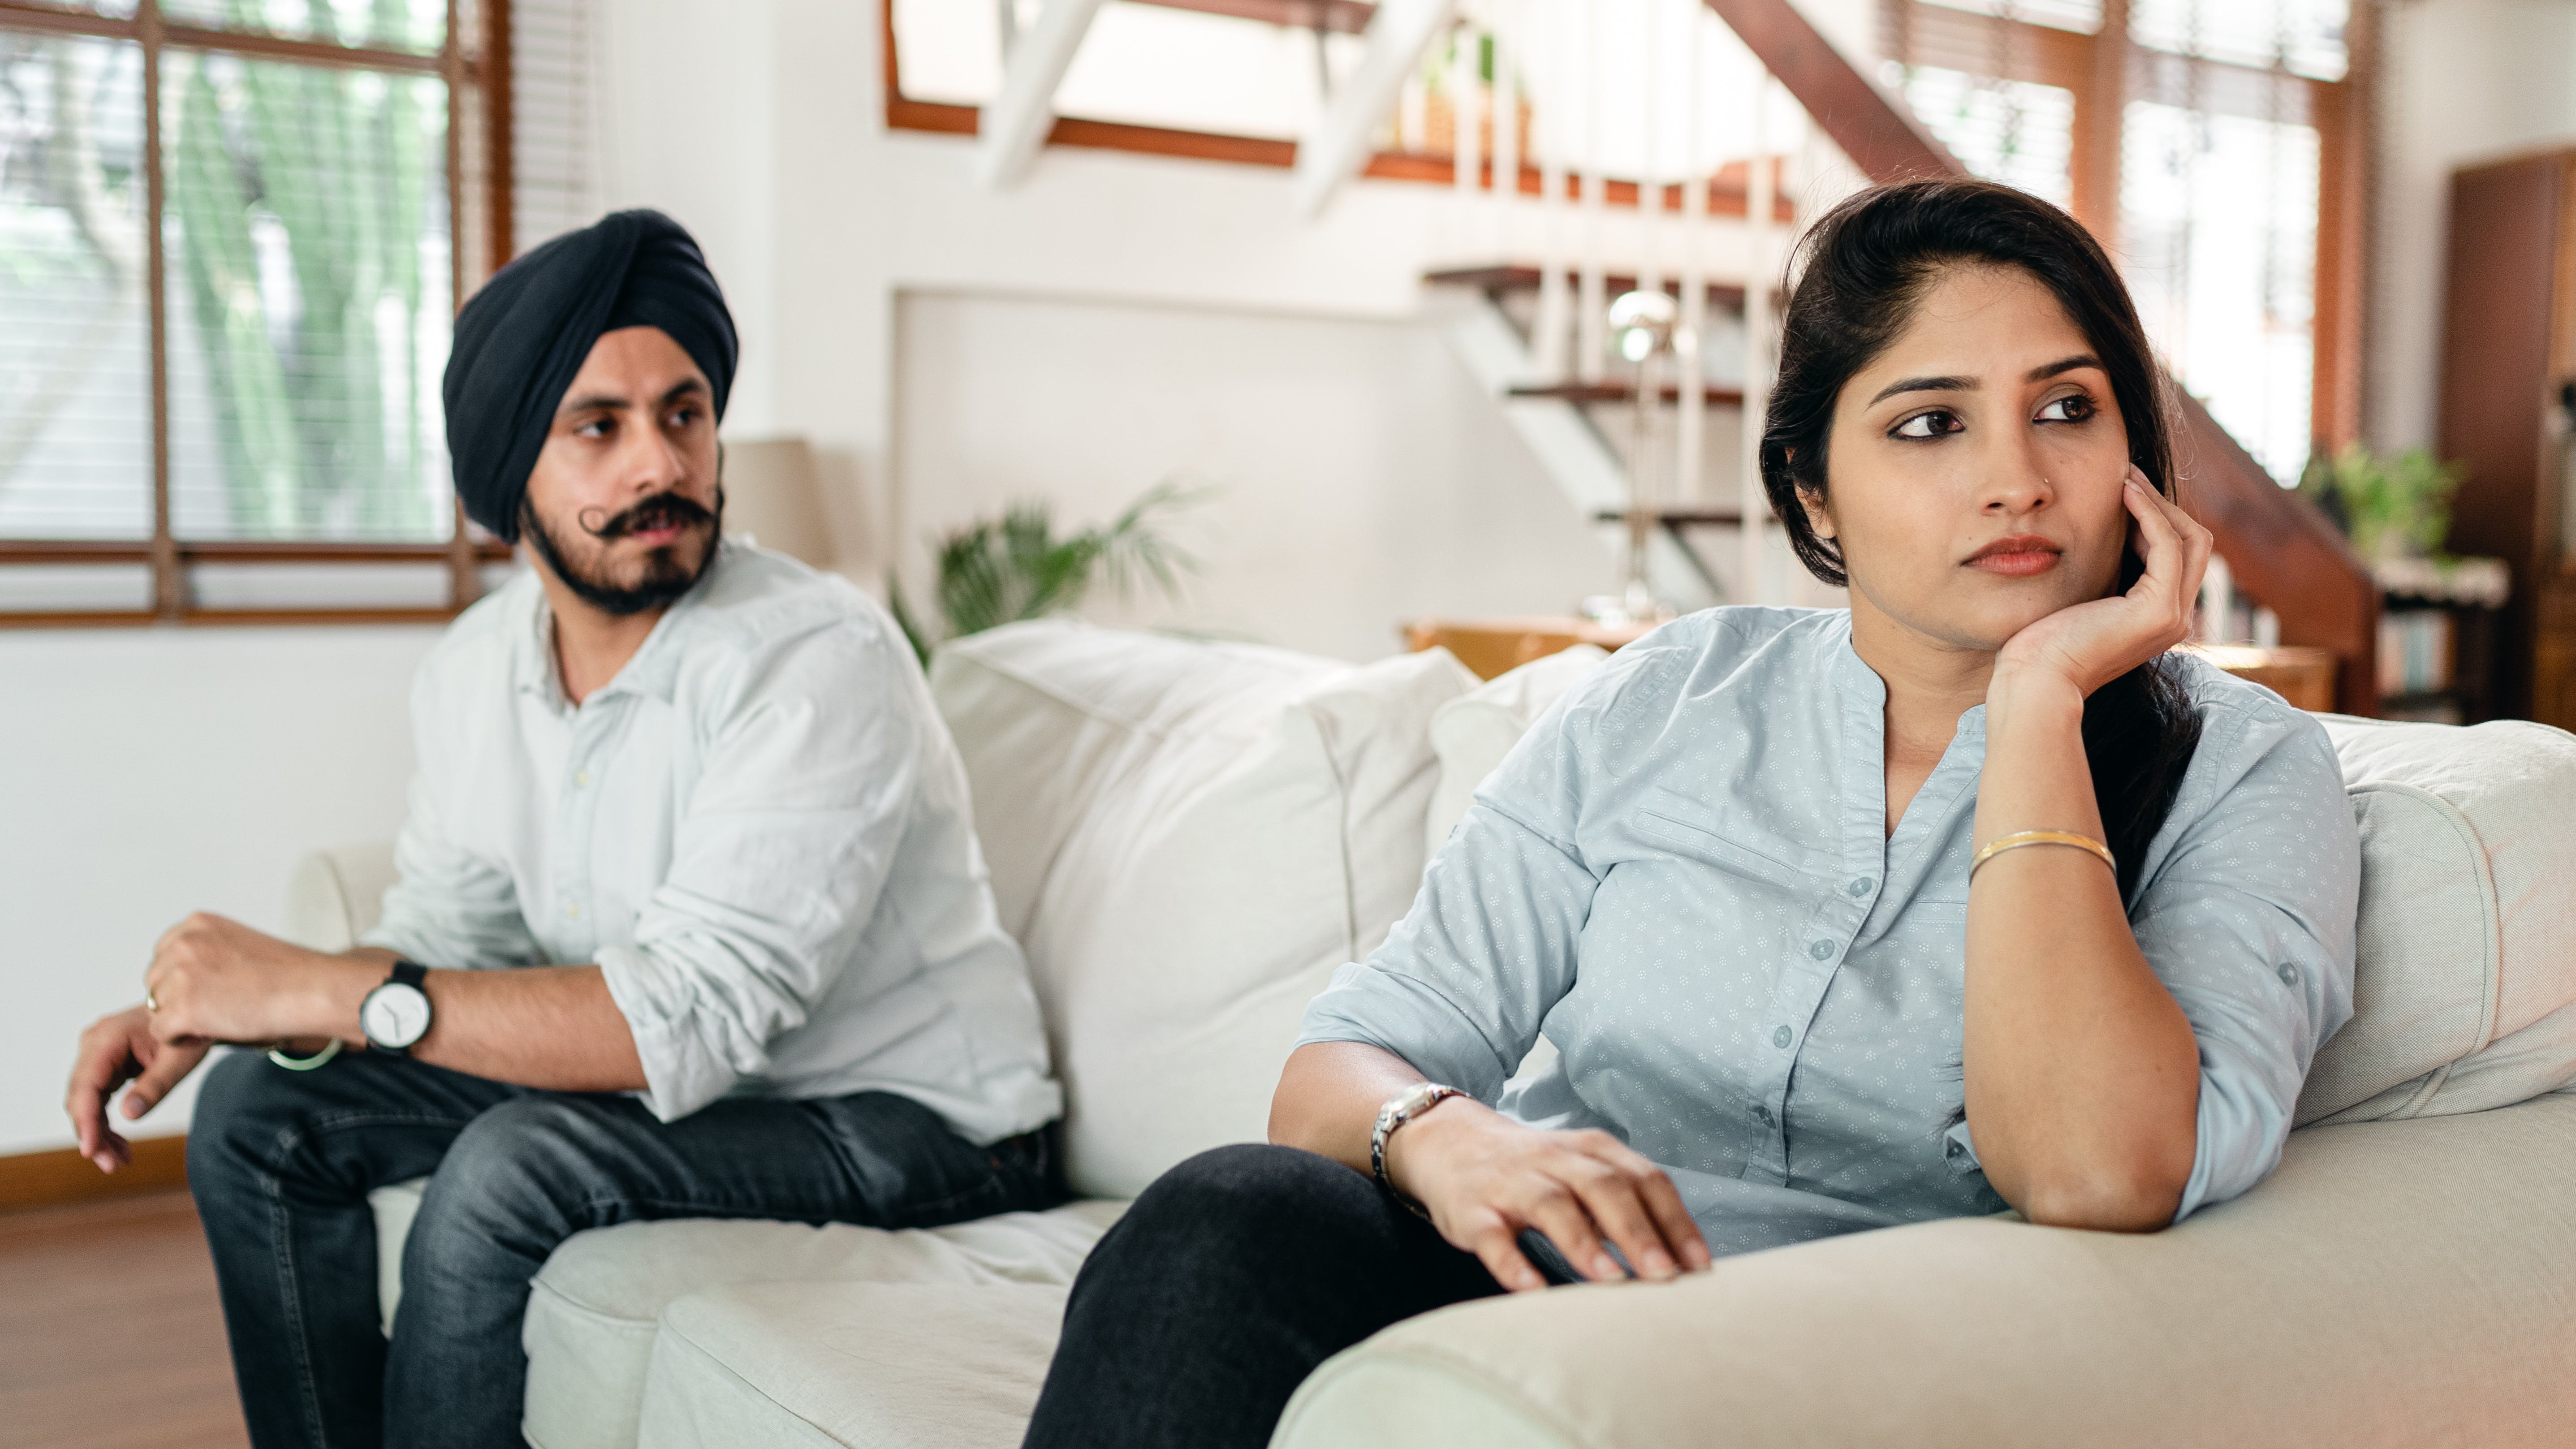 Ein Mann und eine Frau sitzen auf einer Couch | Quelle: Pexels